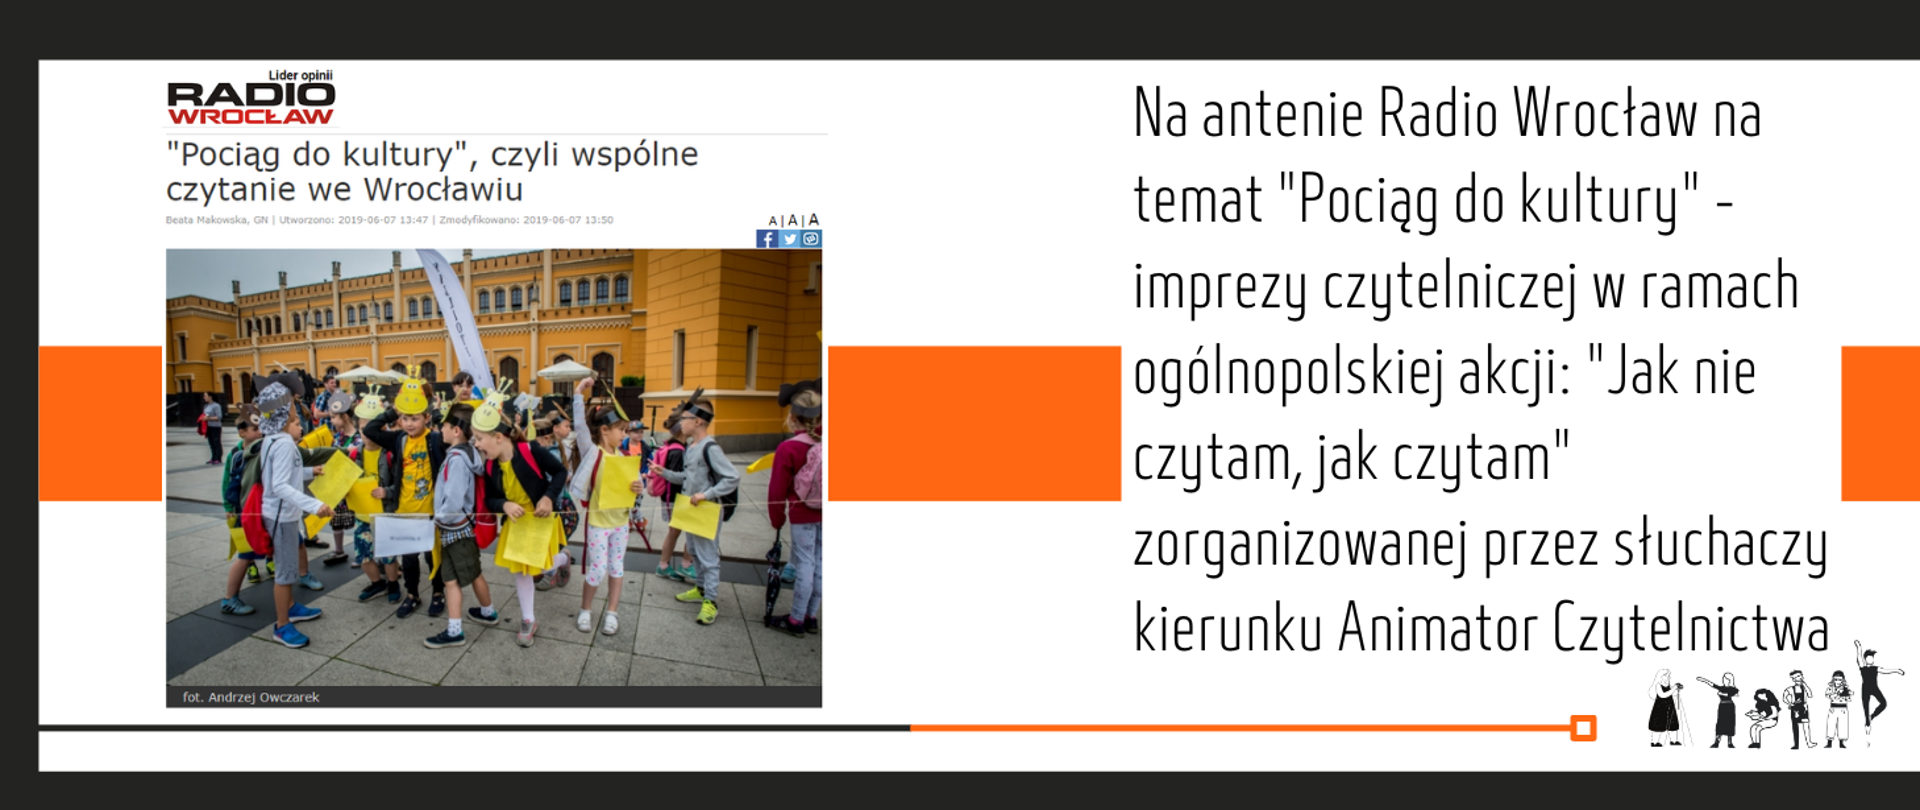 grafika, białe tło, przez środek pas w kolorze pomarańczowym, po lewej stronie screen z portalu radio wrocław, tytuł artykułu pociąg do kultury czyli wspólne czytanie we wrocławiu, na nim zdjęcie grupy dzieci przed dworcem pkp we wrocławiu, po prawej stronie tekst Na antenie Radio Wrocław na temat "Pociąg do kultury" - imprezy czytelniczej w ramach ogólnopolskiej akcji: "Jak nie czytam, jak czytam" zorganizowanej przez słuchaczy kierunku Animator Czytelnictwa